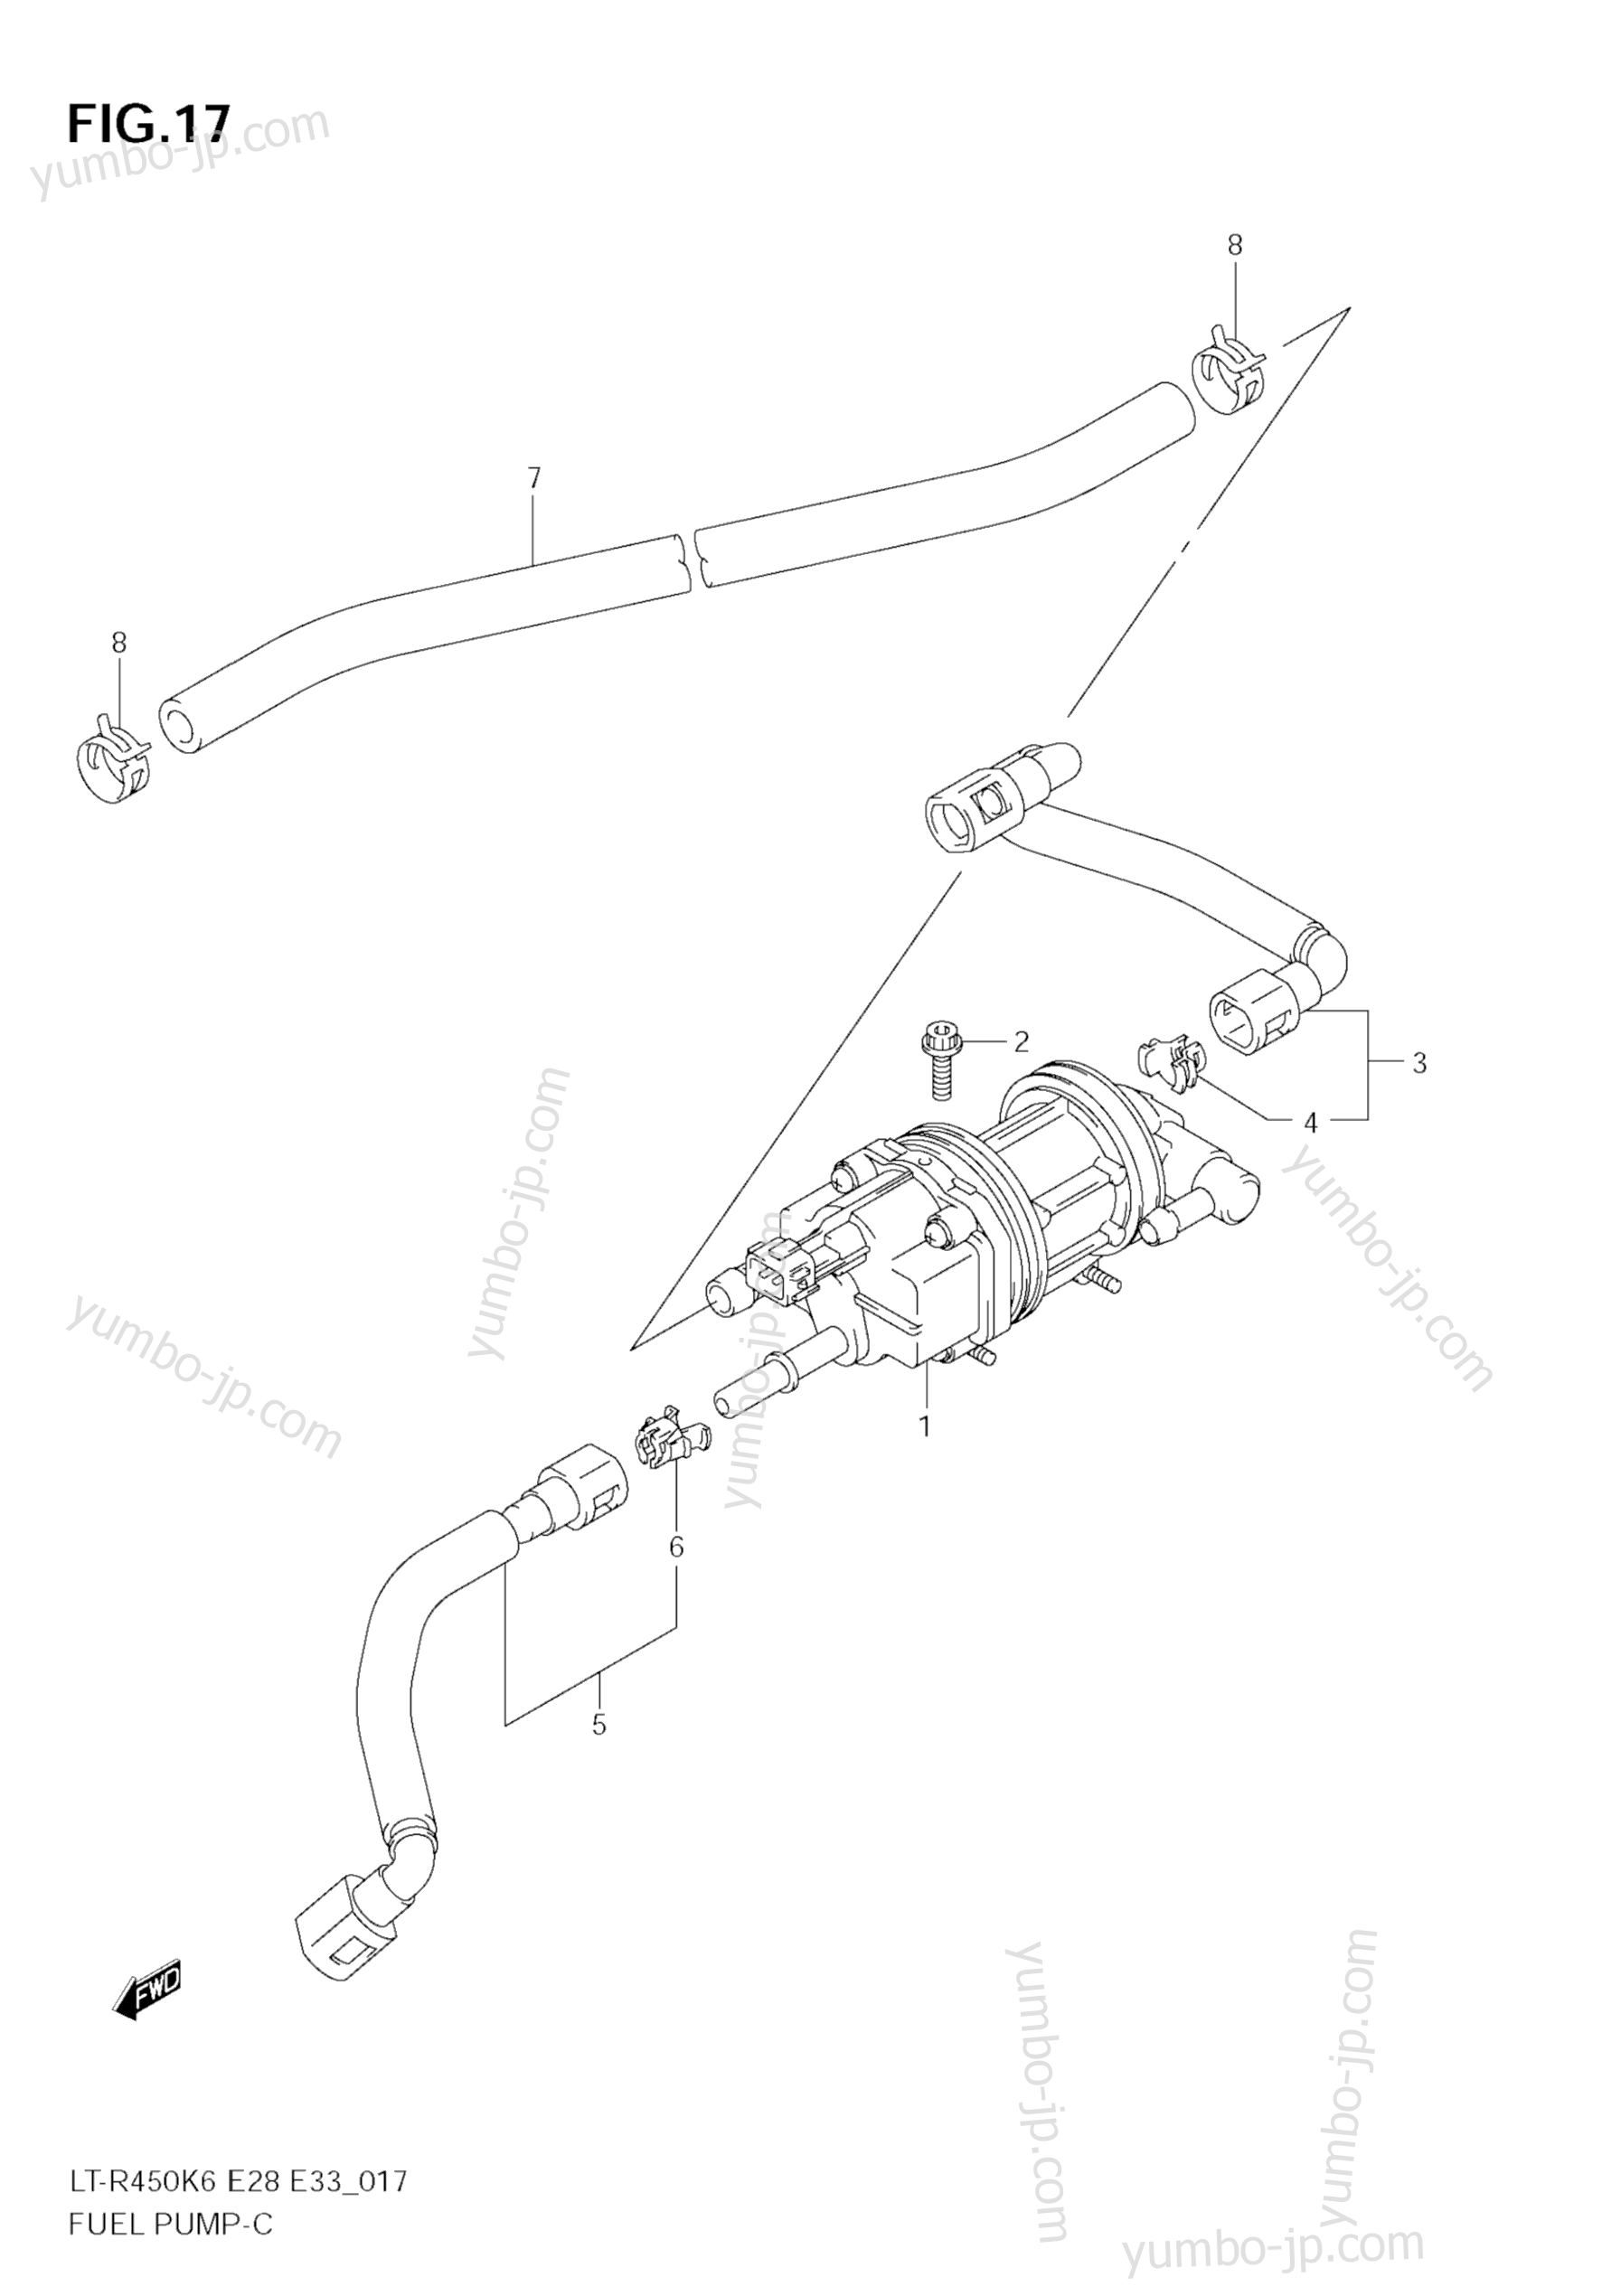 Топливный насос для квадроциклов SUZUKI QuadRacer (LT-R450Z) 2009 г.